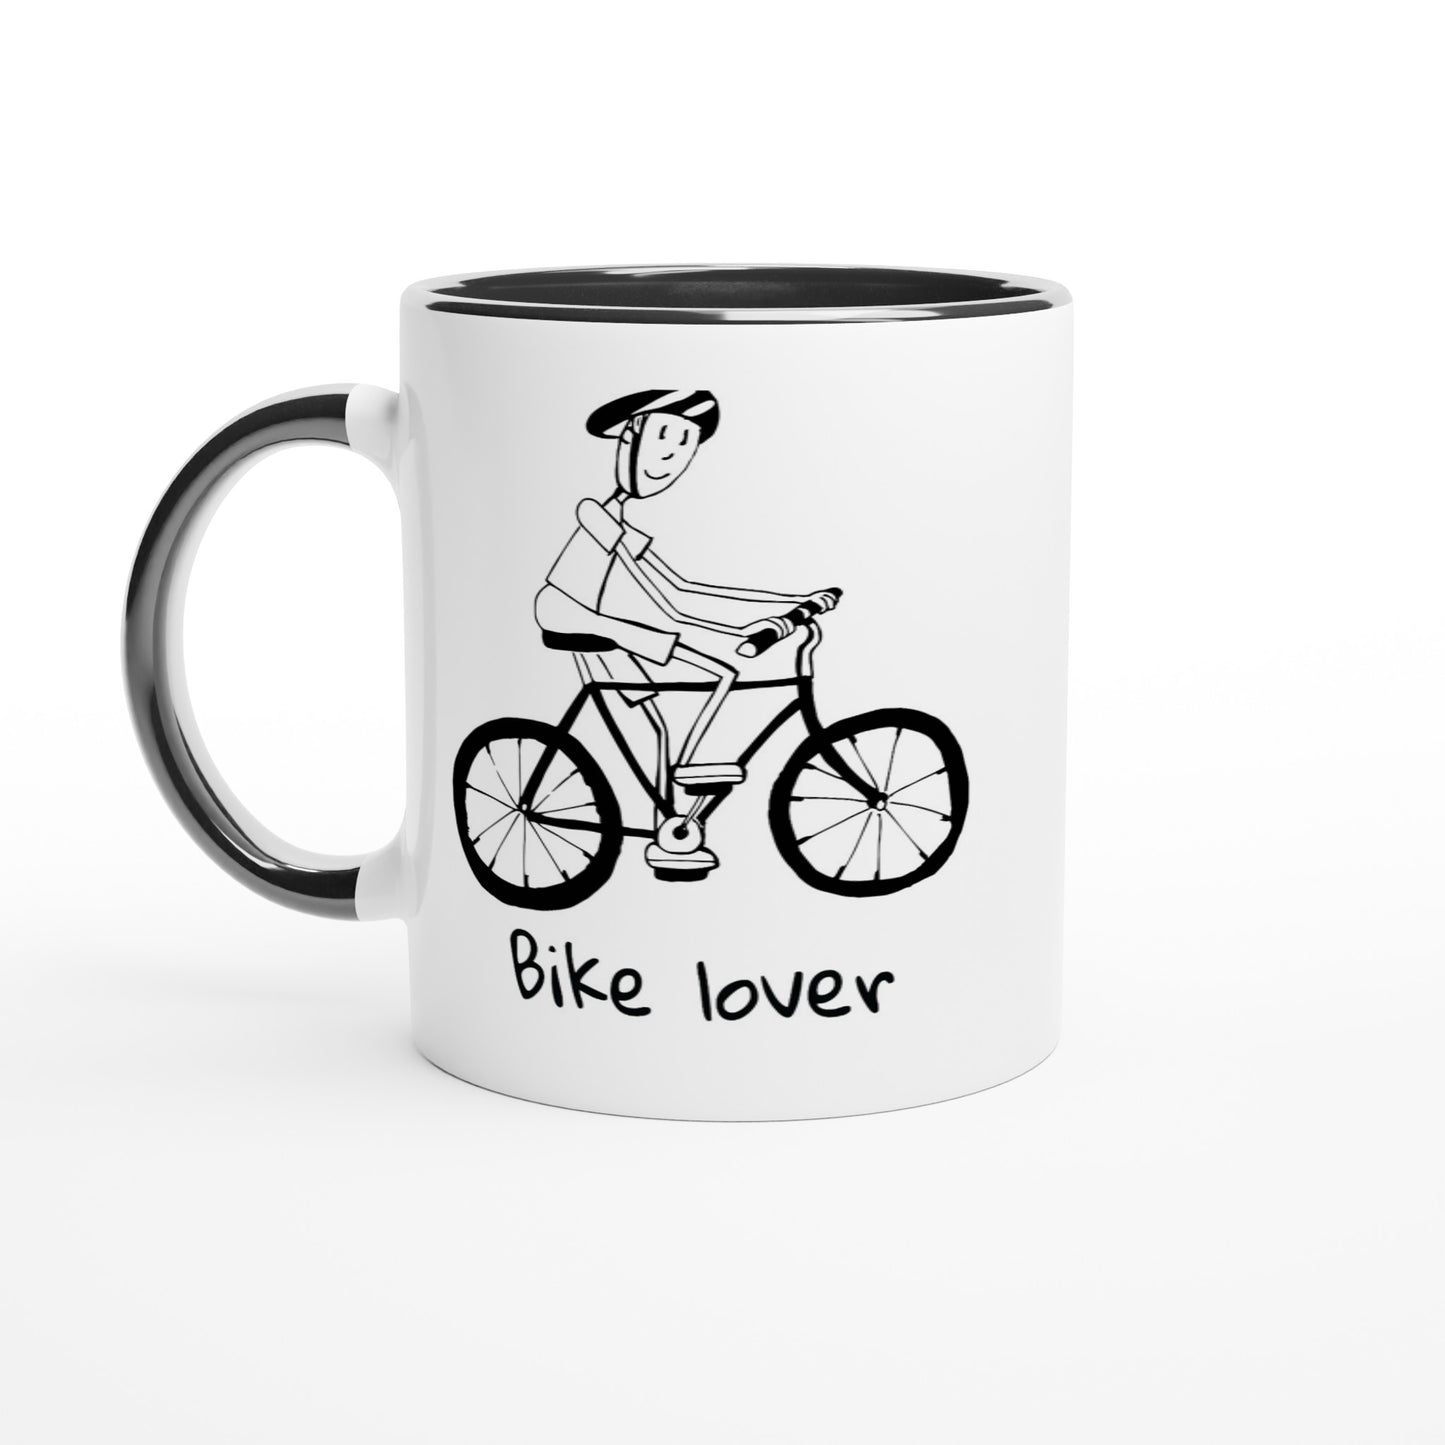 Bike lover ceramic mug - mens